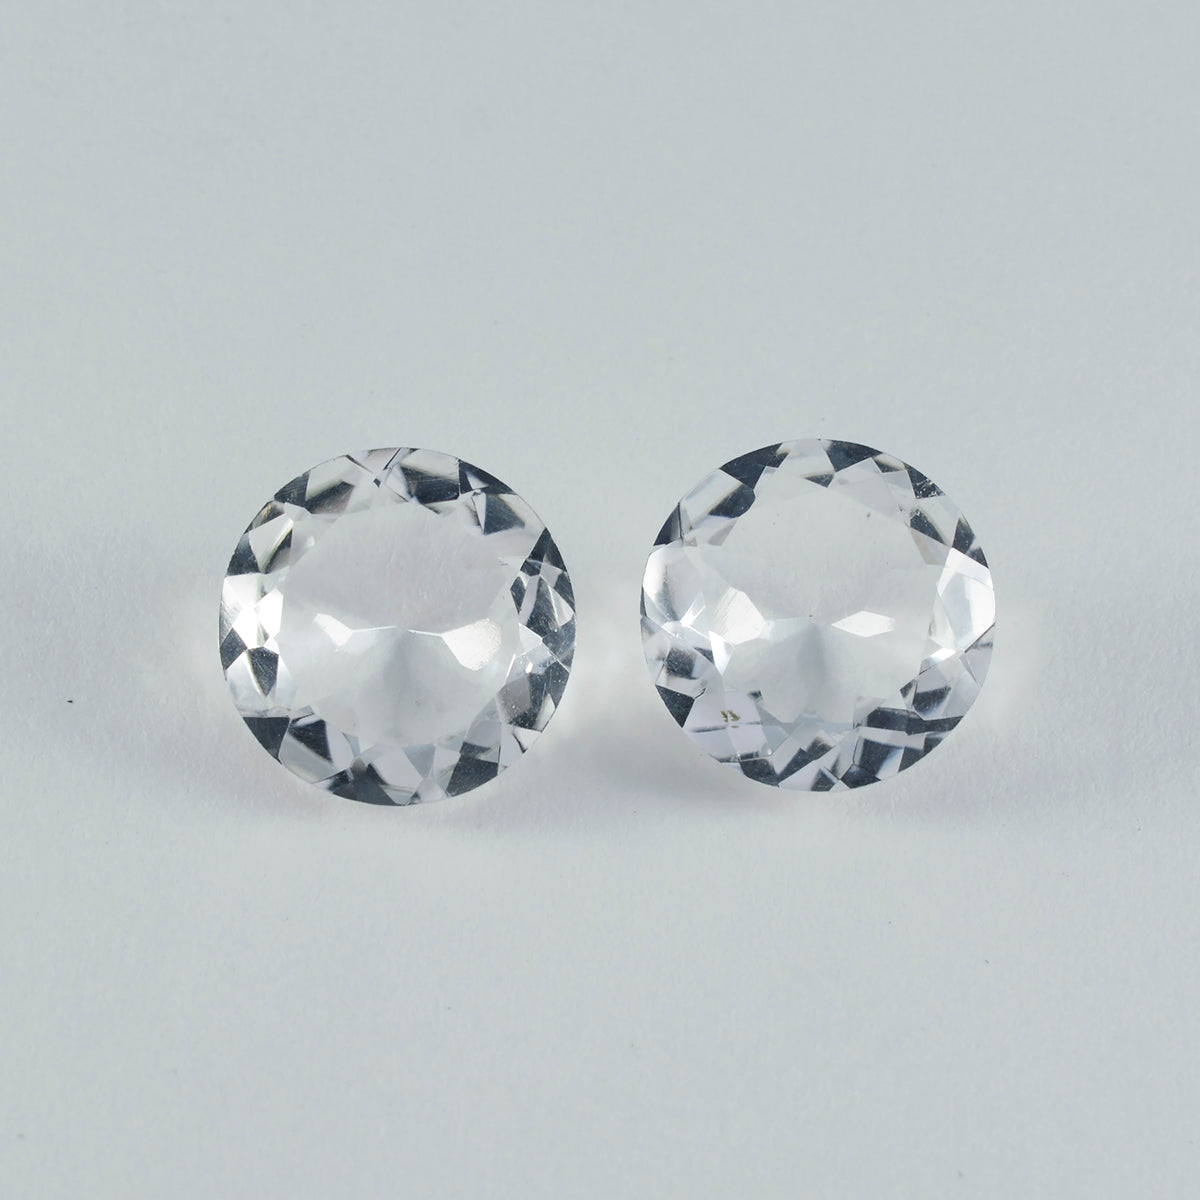 Riyogems 1 Stück weißer Kristallquarz, facettiert, 15 x 15 mm, runde Form, wunderschöner Qualitätsedelstein